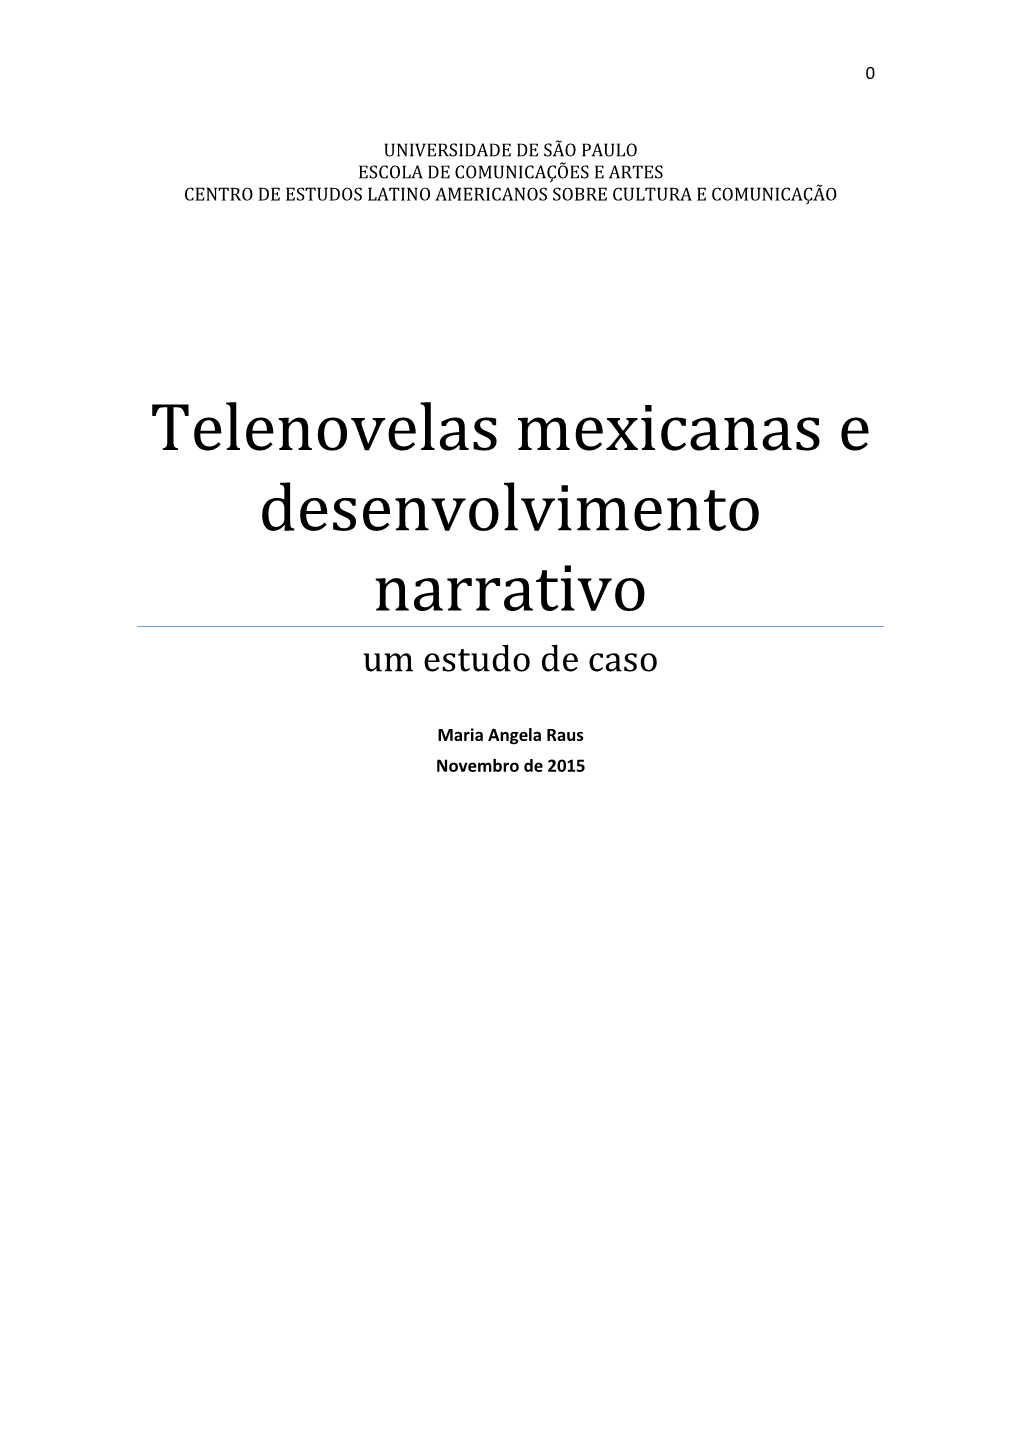 Telenovelas Mexicanas E Desenvolvimento Narrativo Um Estudo De Caso